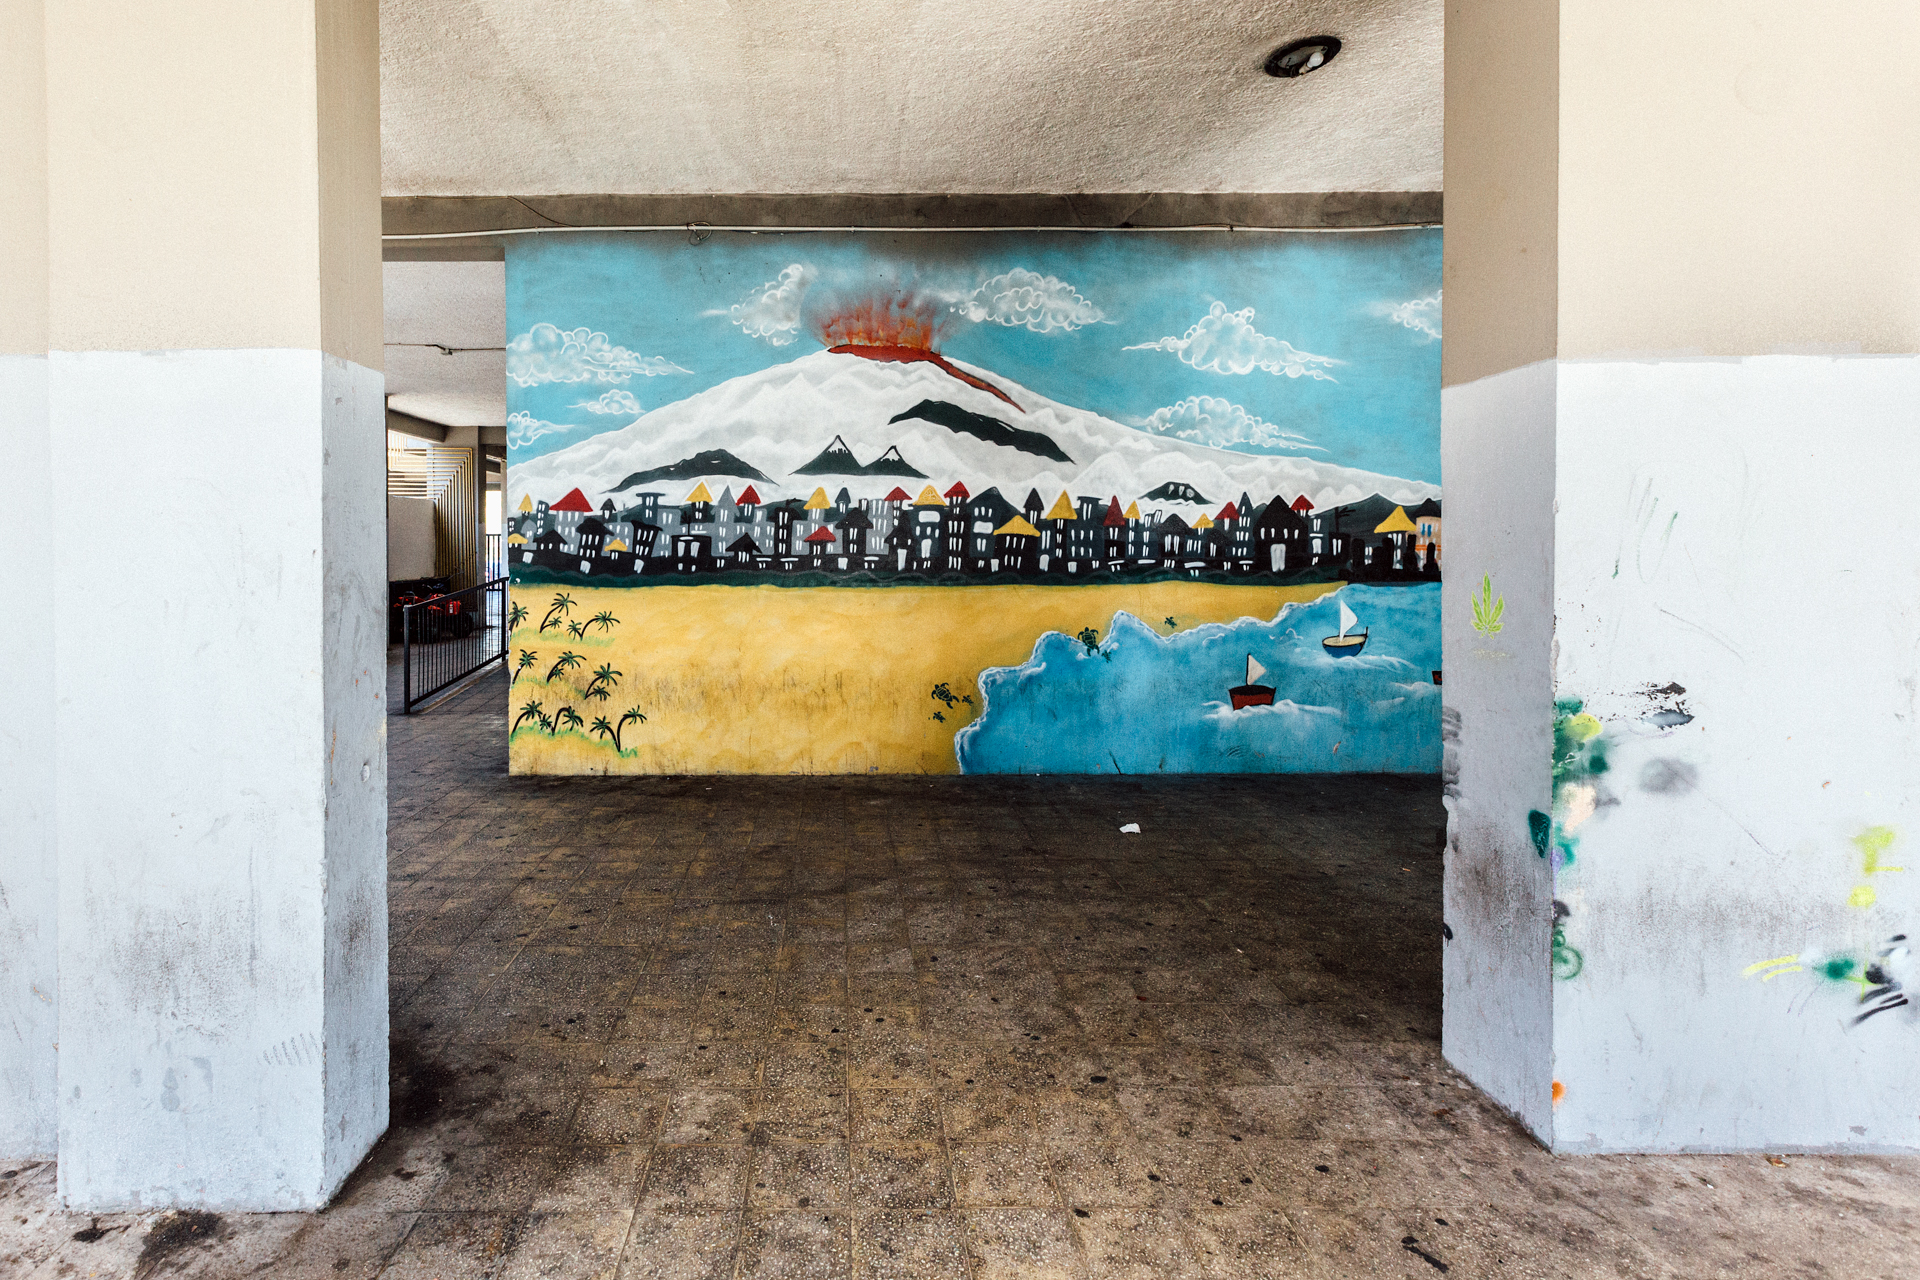 Murales raffigurante l’Etna che erutta su Librino, Catania, 2015 - 2016. © Riccardo Colelli.